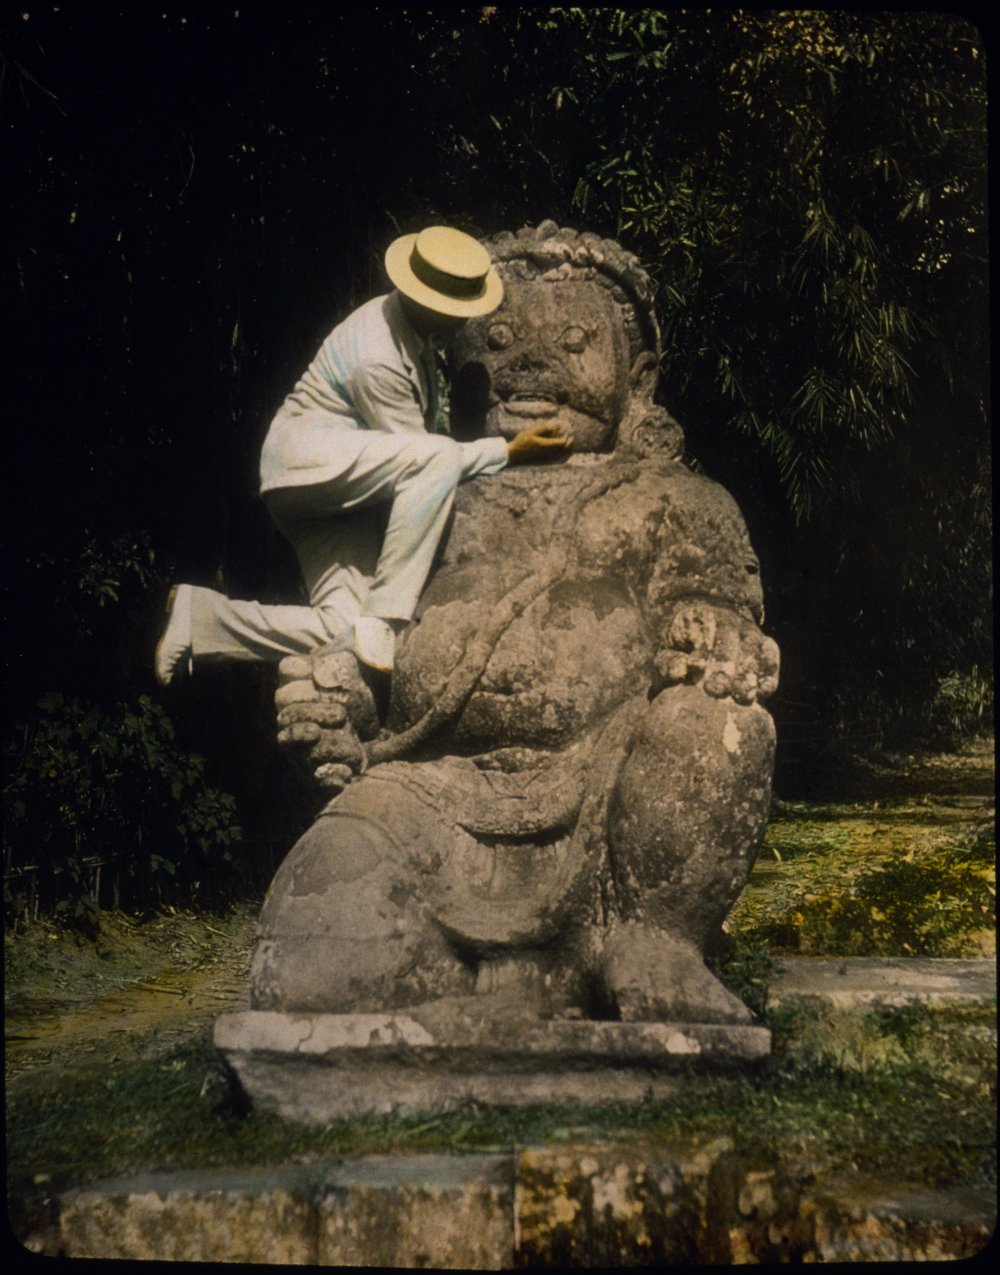 L'homme au chapeau de paille debout sur une idole bouddhique des ruines de Borobodur